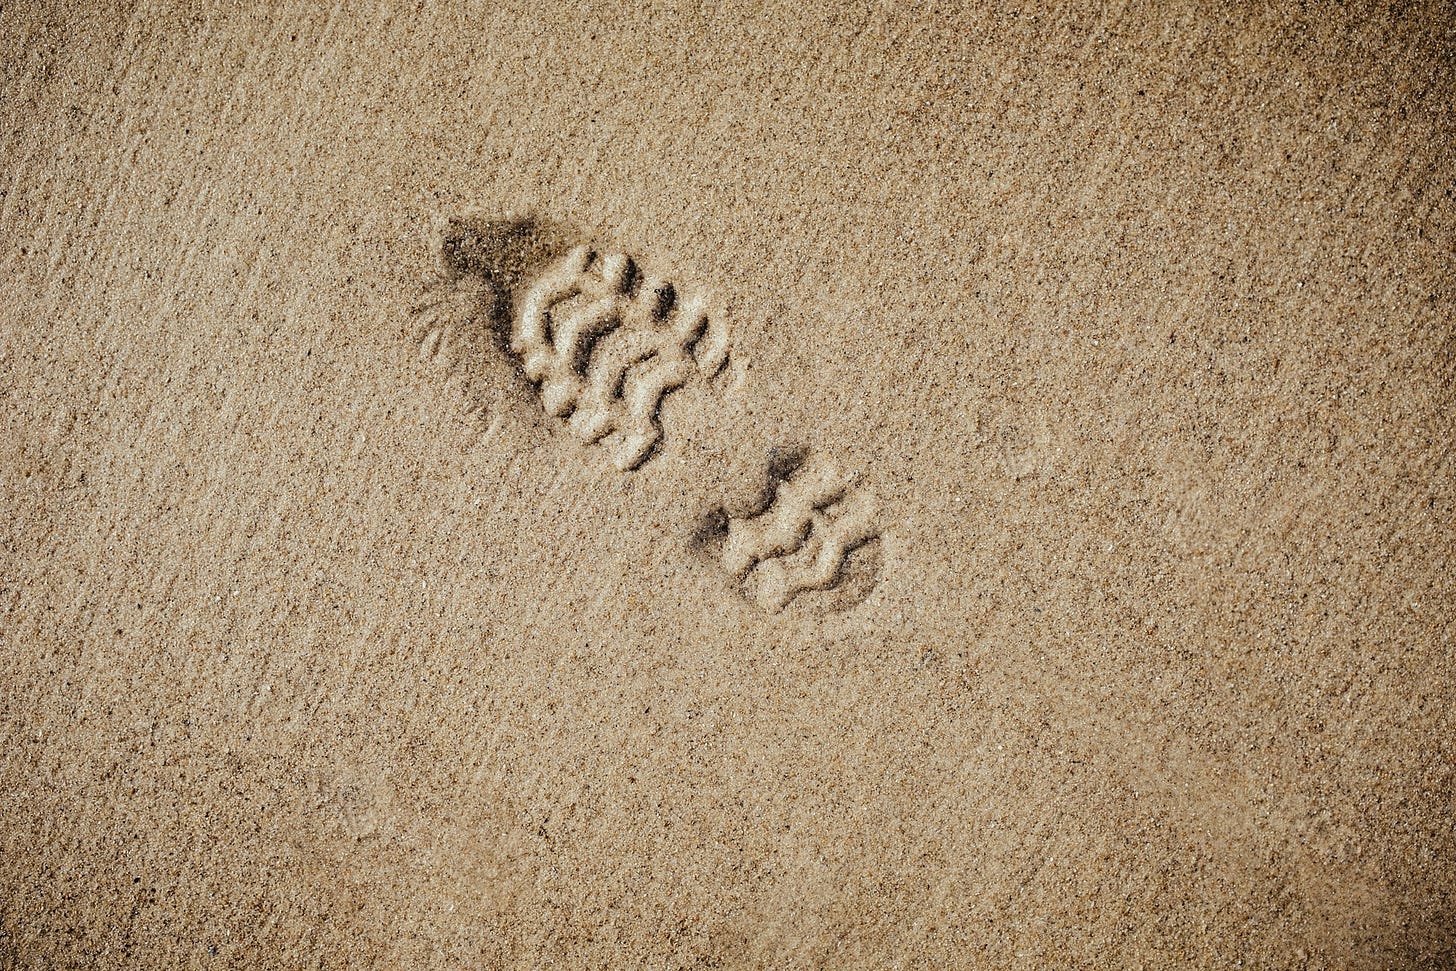 Impronta di uno scarpone sulla sabbia vista dall'alto. La punta dello scarpone punta in obliquo verso la parte alta e sinistra dell'immagine.